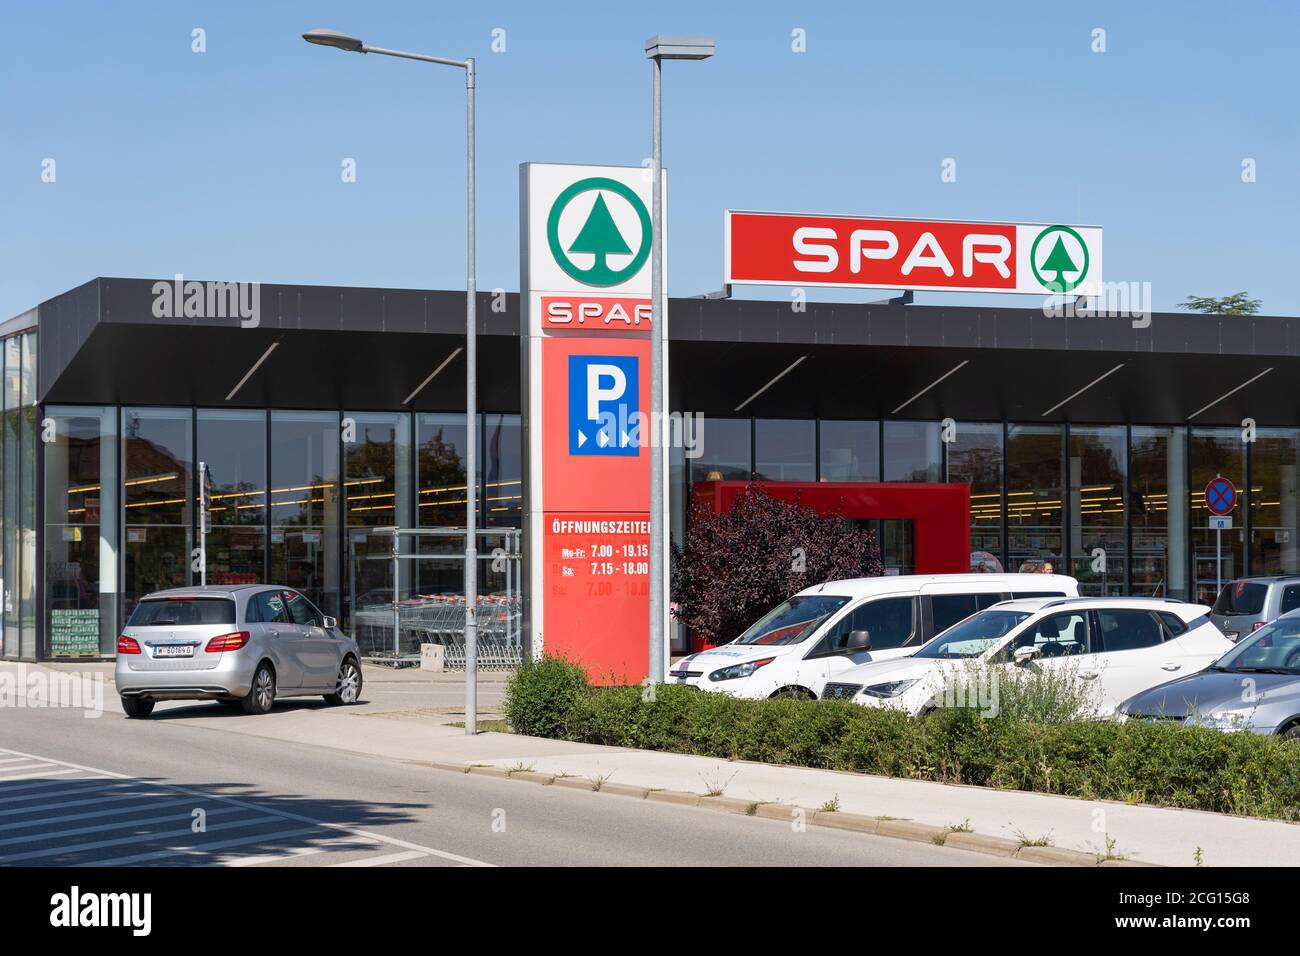 Ein Spar Supermarkt mit einem großen Schild und Logo, Langenlois, Österreich. Spar ist ein niederländisches multinationales Franchise, das Lebensmittelgeschäfte verwaltet Stockfoto